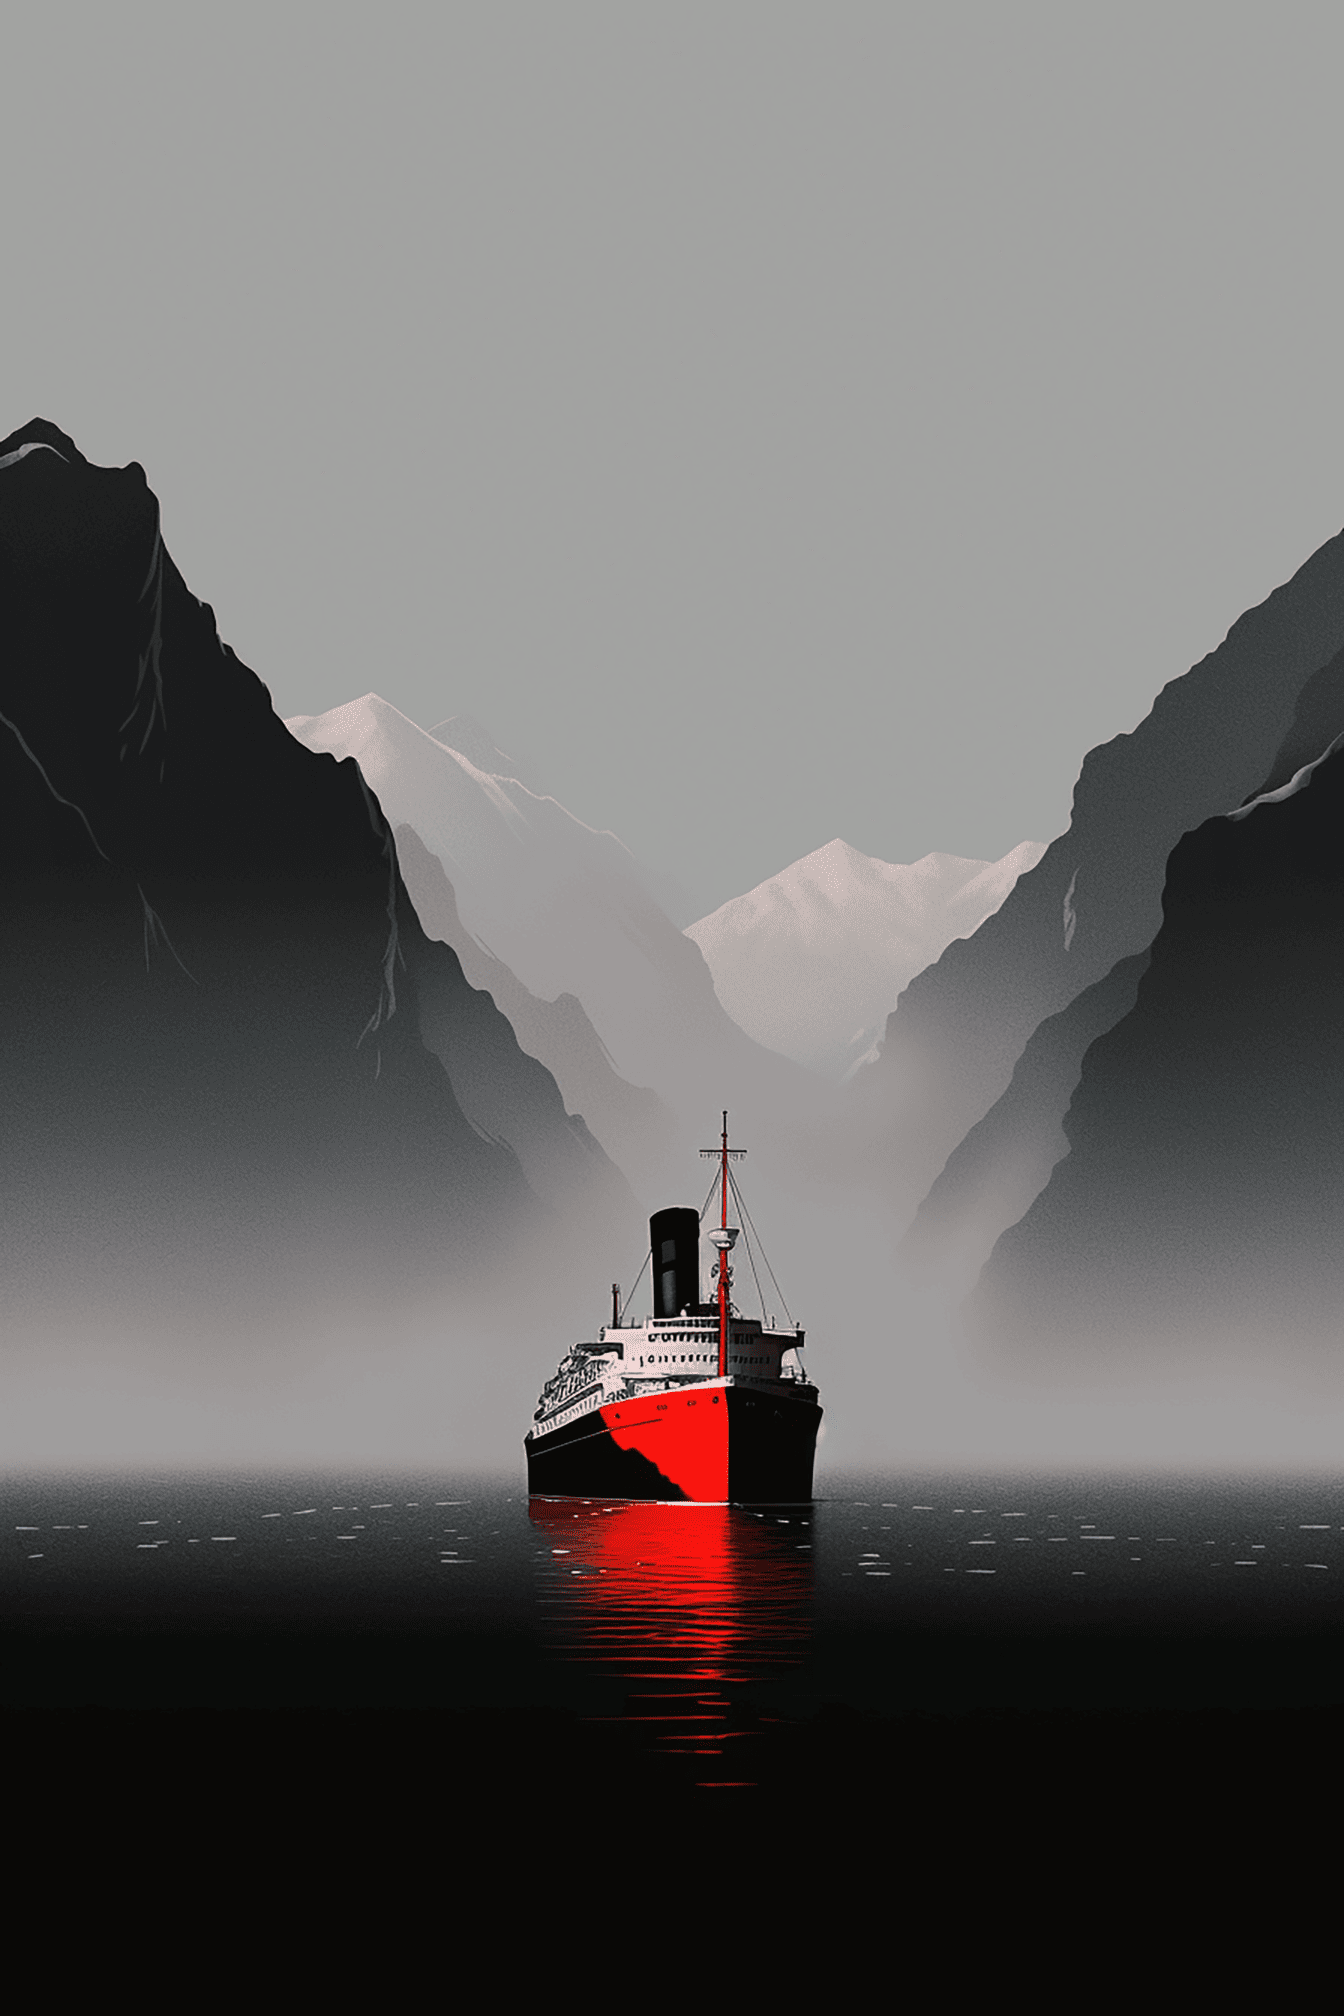 Illustration vectorielle d’un bateau de croisière dans la baie avec des montagnes en arrière-plan